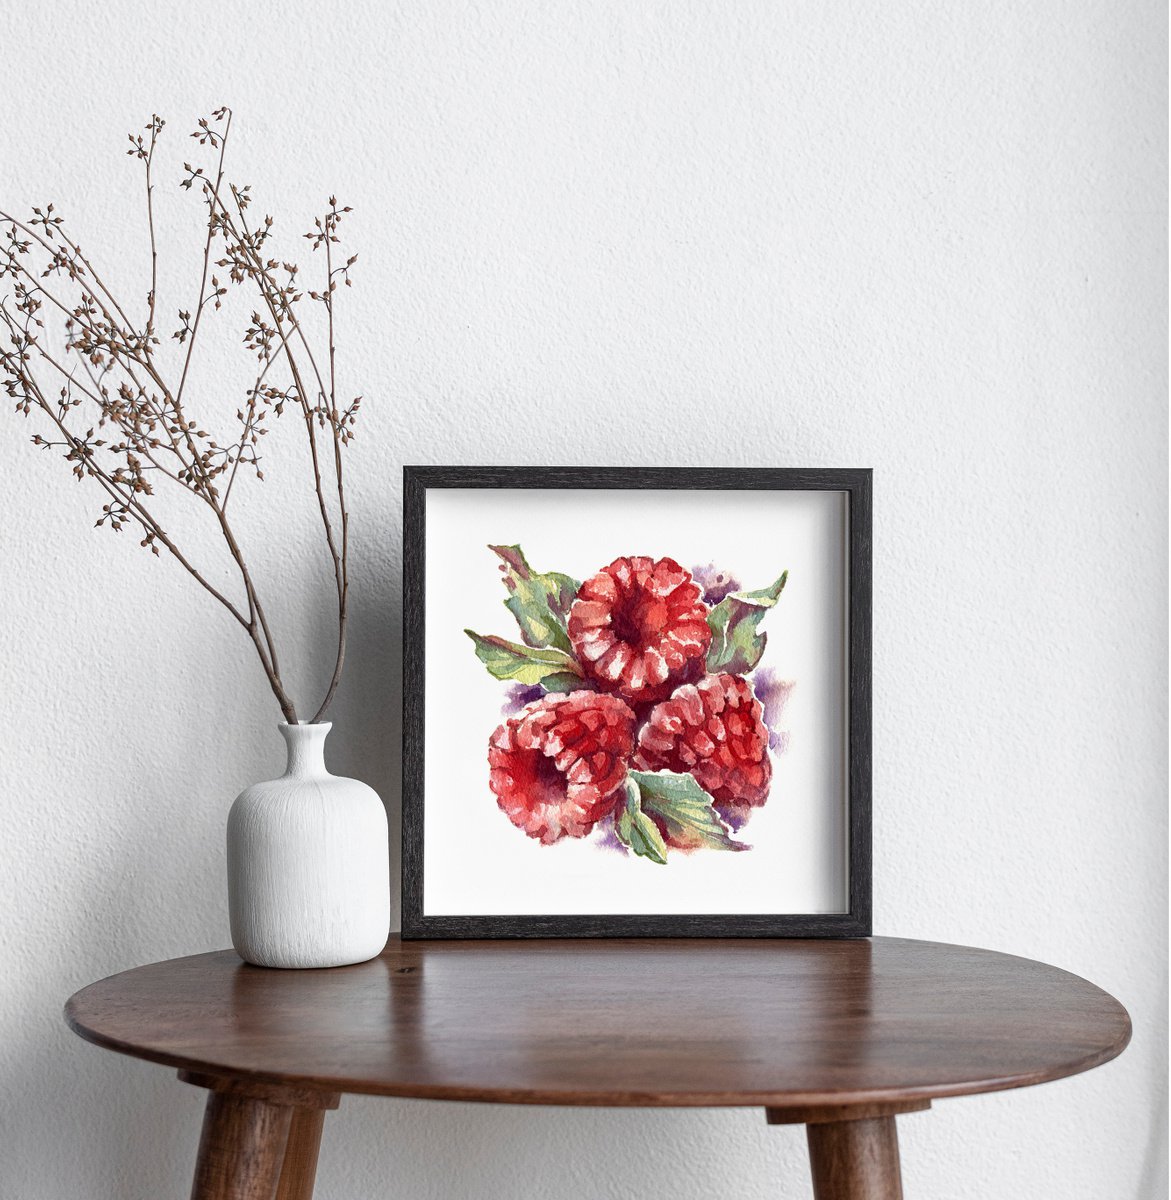 Raspberries from the series of watercolor illustrations Berries by Ksenia Selianko